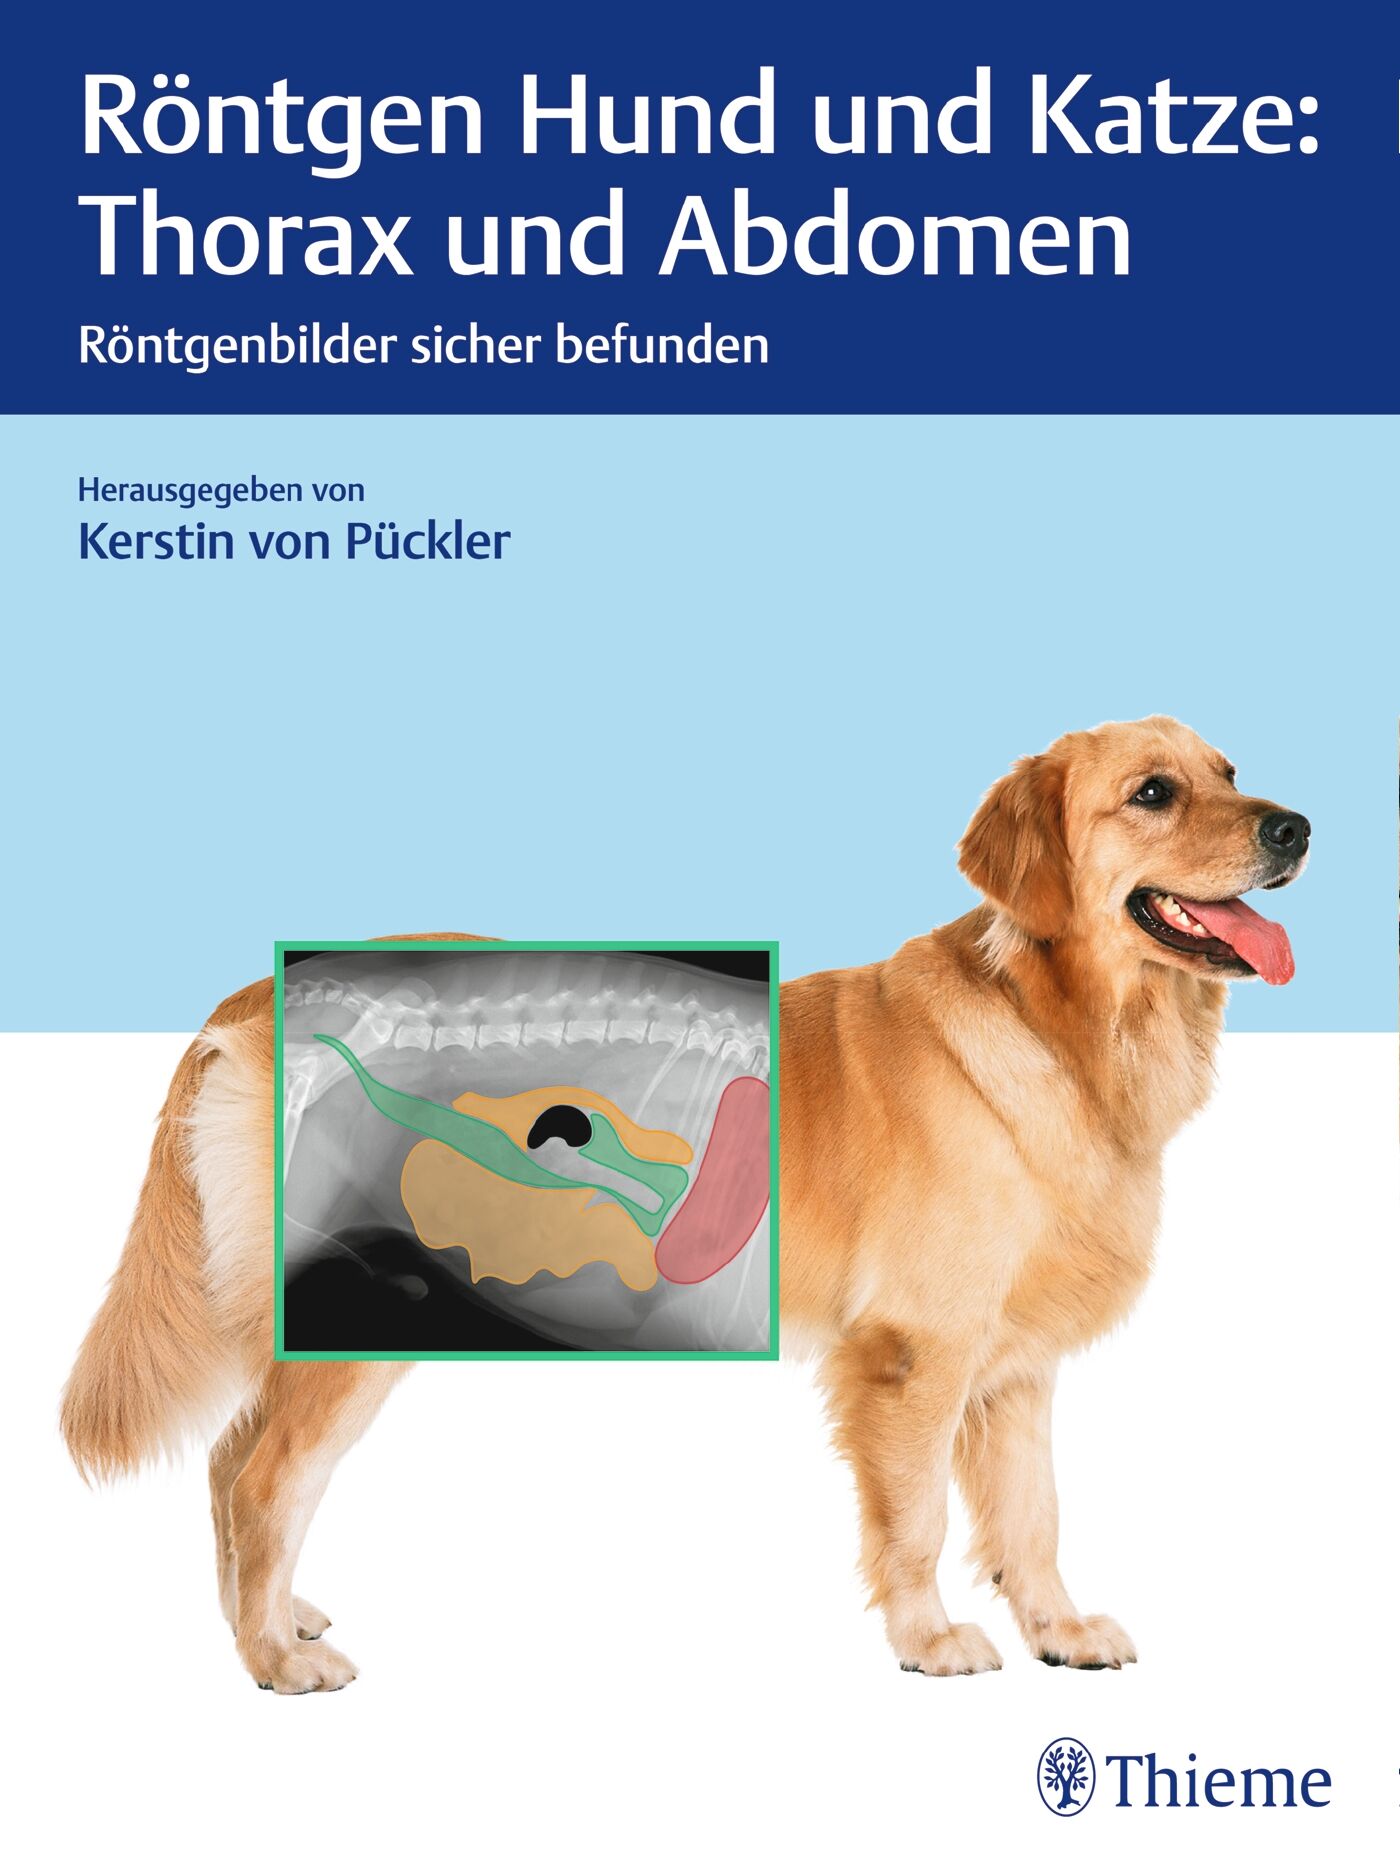 Röntgen Hund und Katze: Thorax und Abdomen, 9783132425392